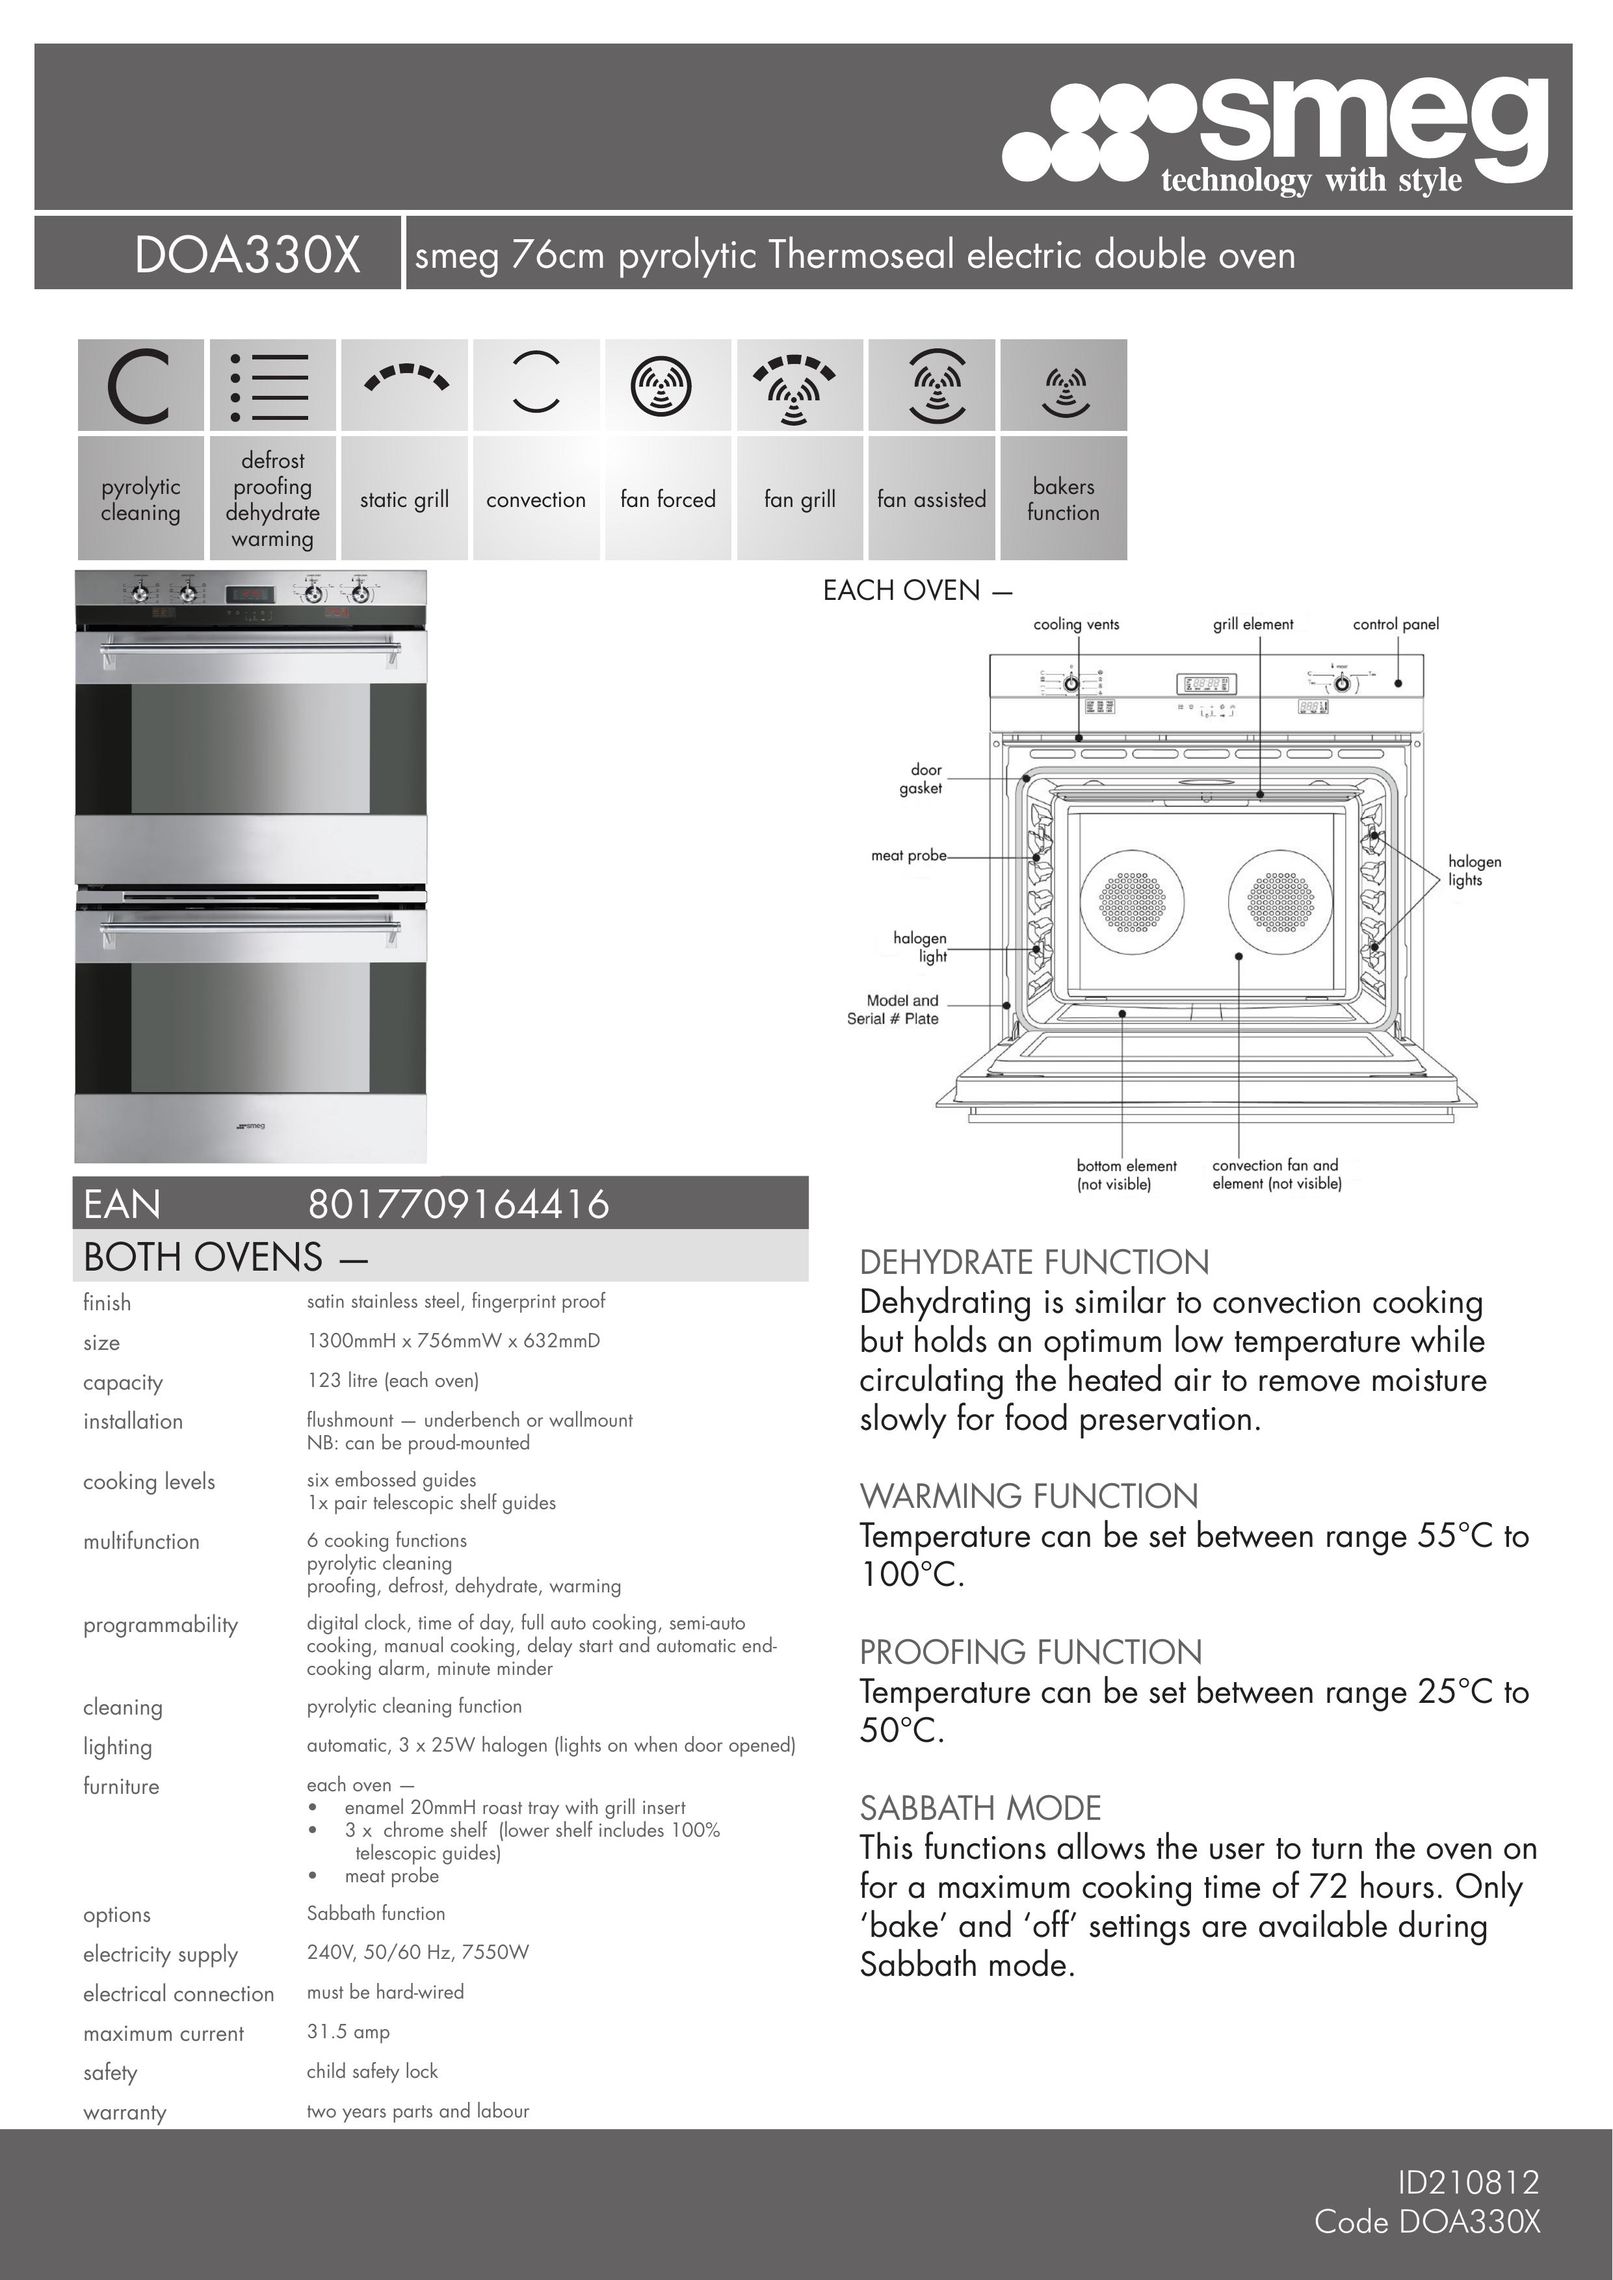 Smeg DOA330X Double Oven User Manual